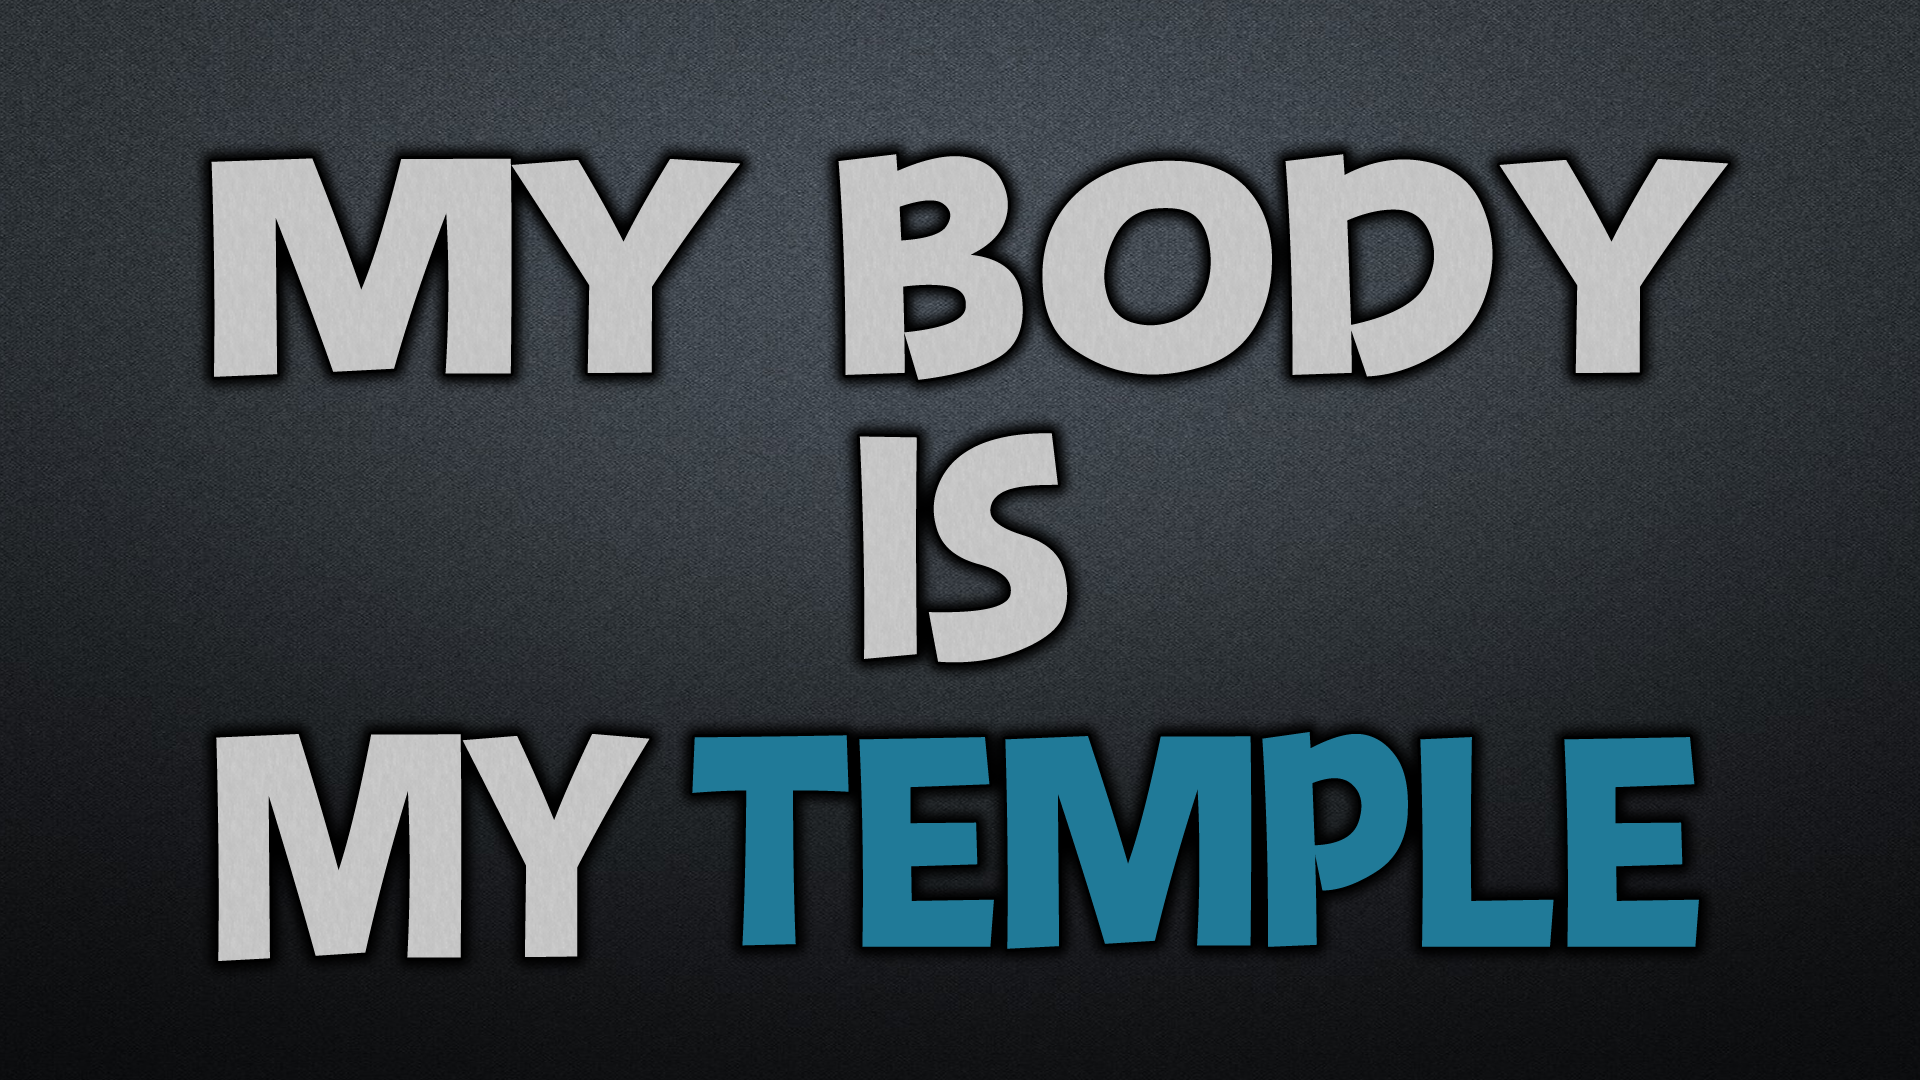 This body is mine. My body is a Temple. Мое тело мой храм. Мое тело мой храм обои. Мое тело храм Мем.